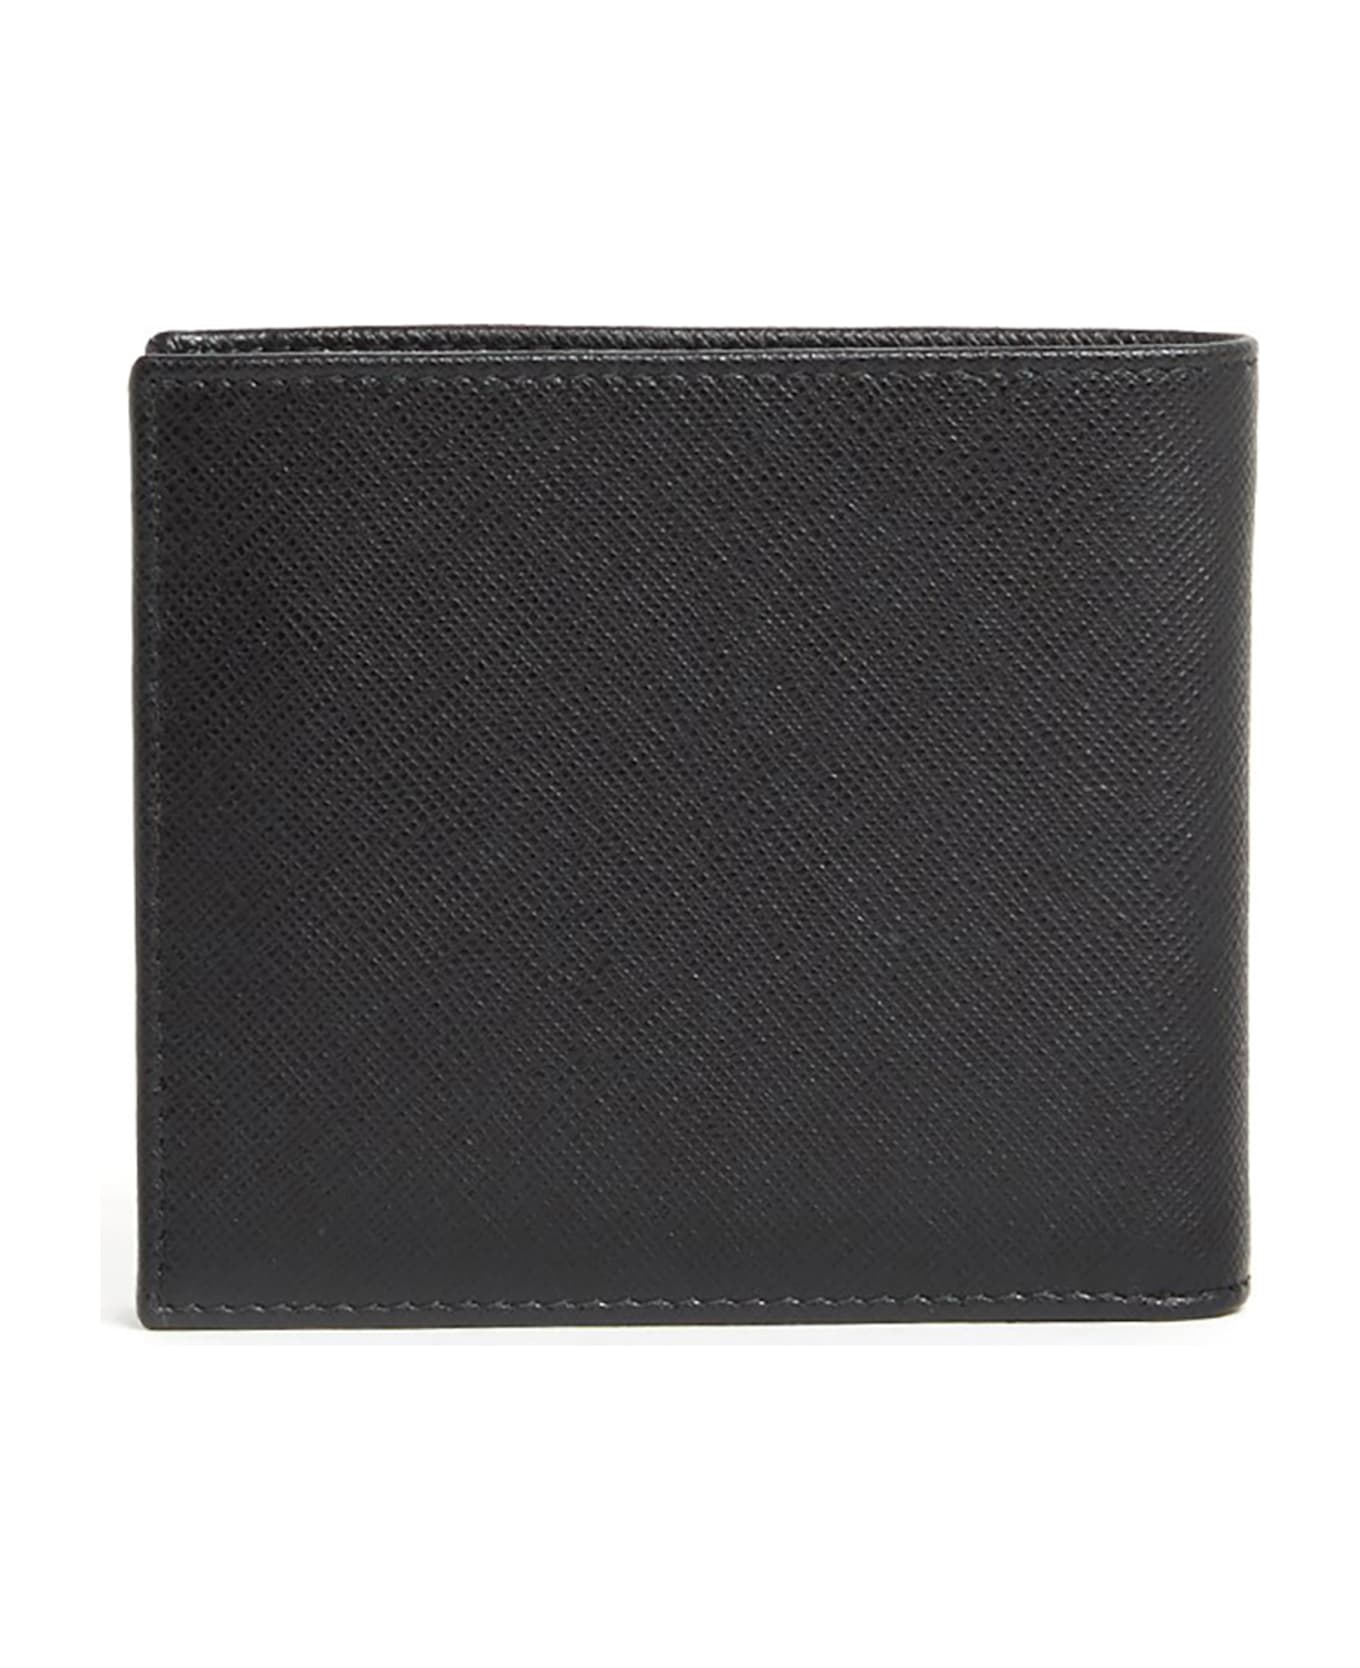 Prada Wallet - F0002